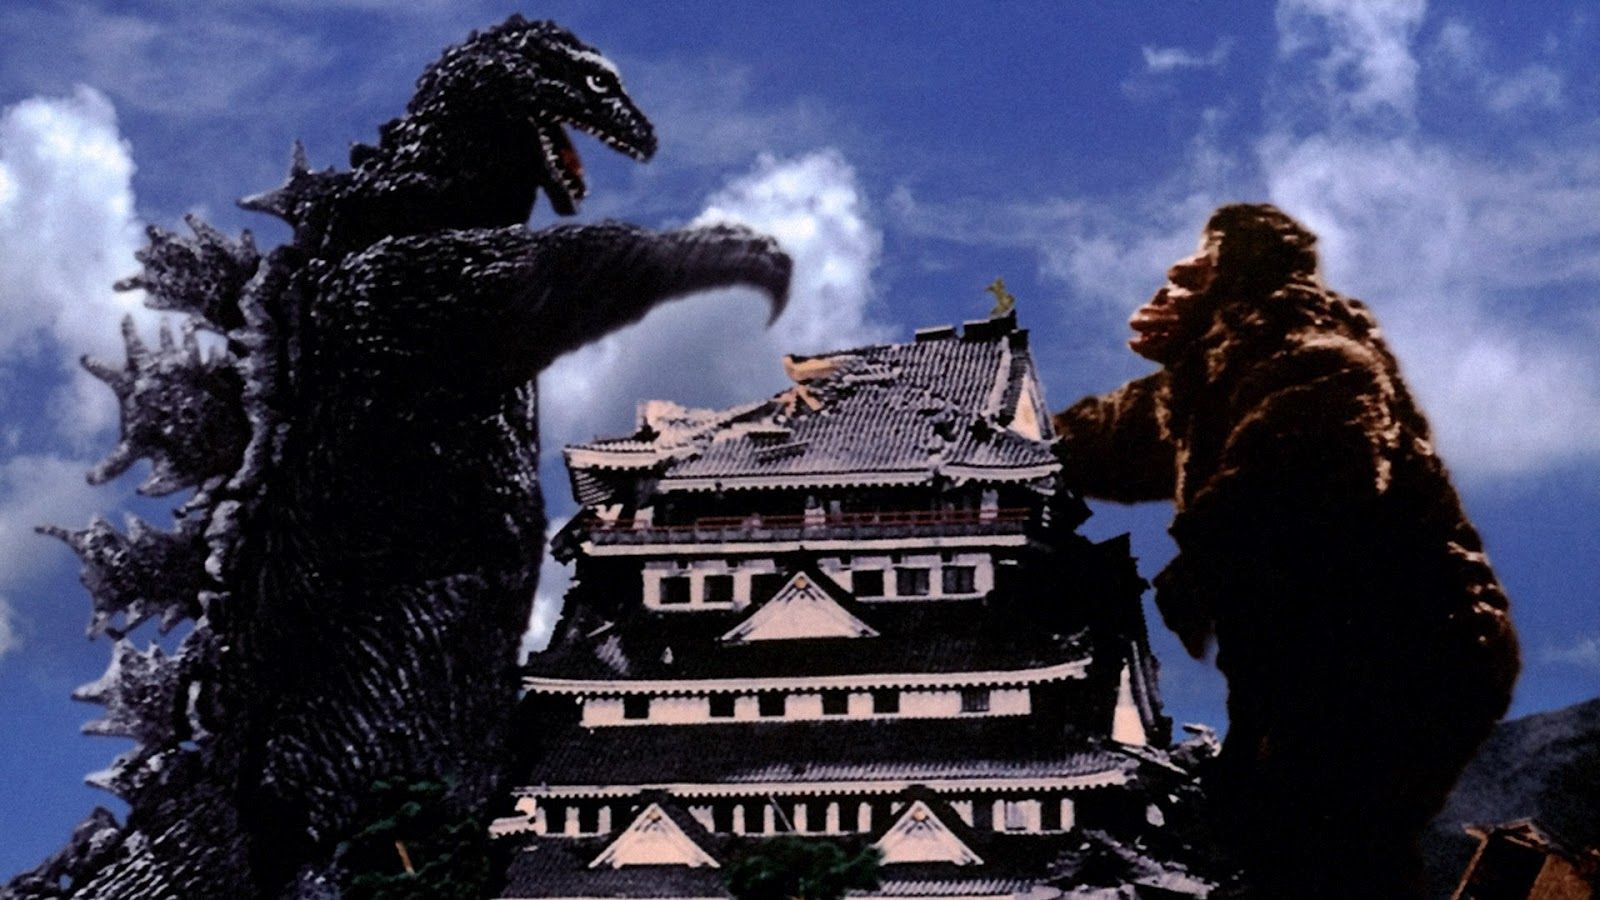 Reasons Why the Upcoming Godzilla vs. King Kong Movie Is a Bad